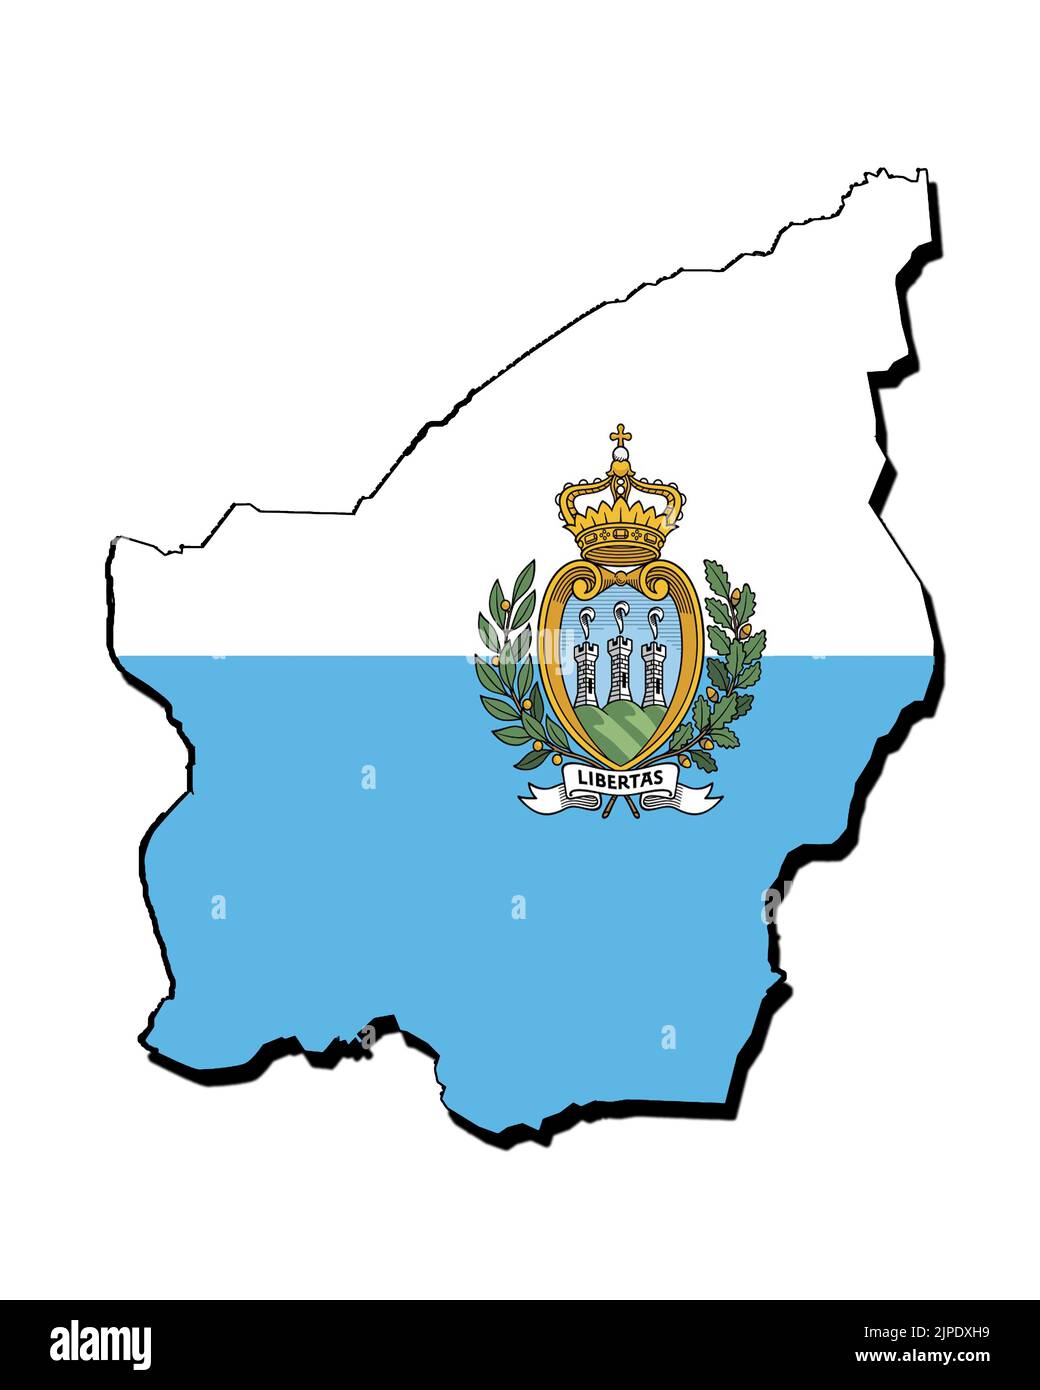 Silhouette de la carte de Saint-Marin avec son drapeau Banque D'Images